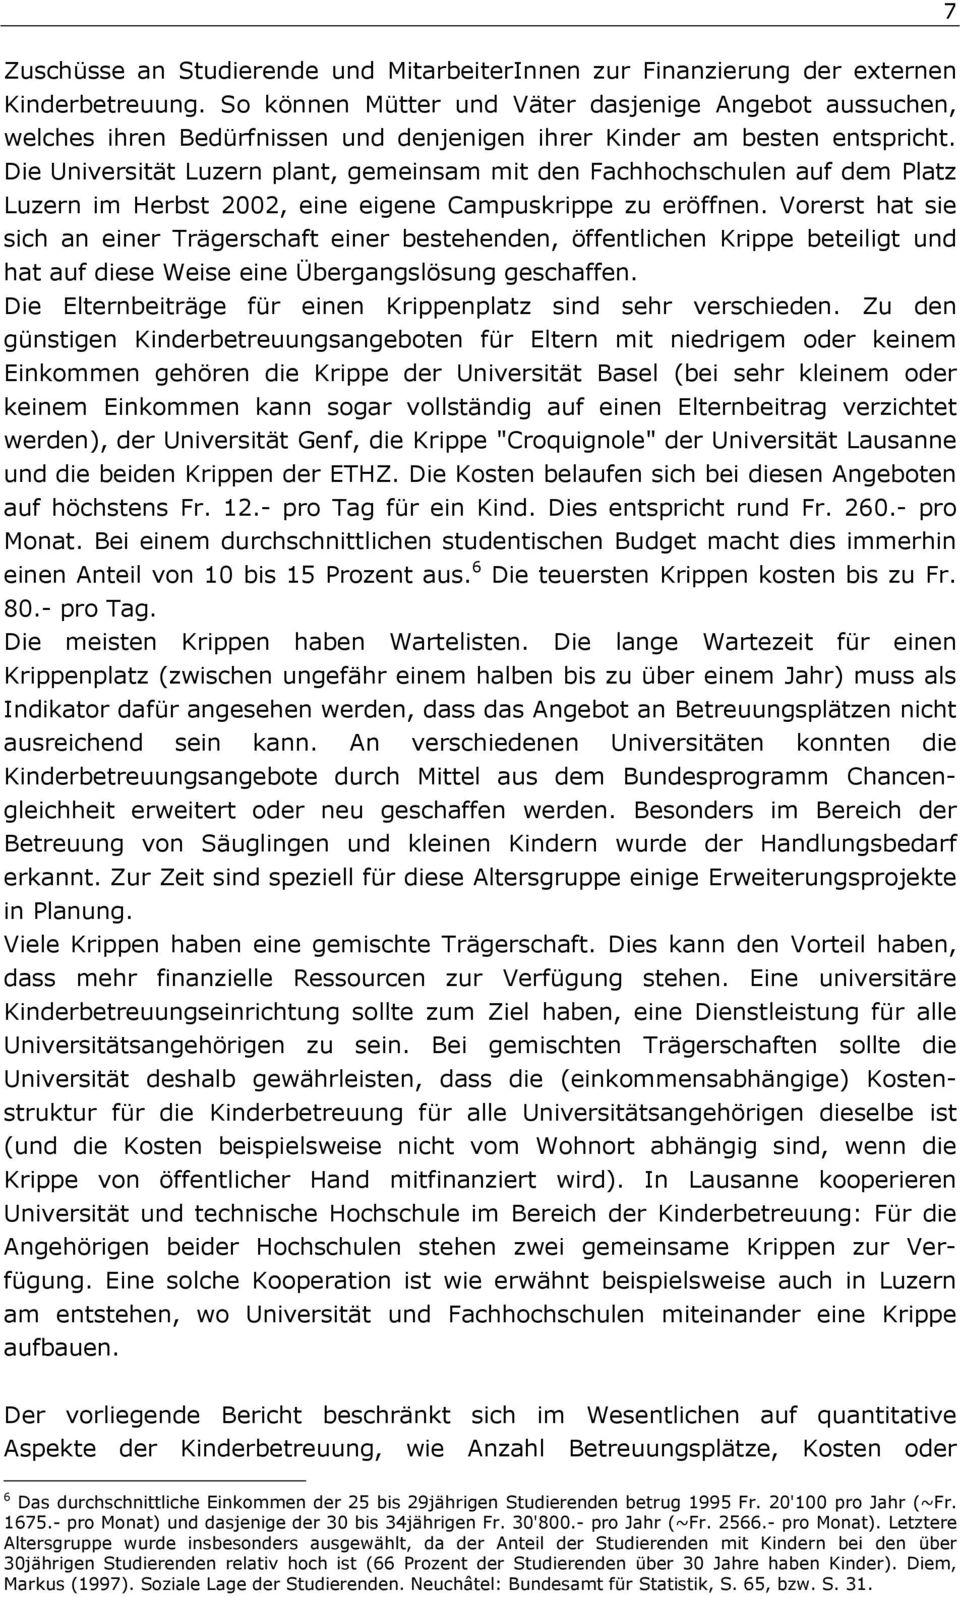 Die Universität Luzern plant, gemeinsam mit den Fachhochschulen auf dem Platz Luzern im Herbst 2002, eine eigene Campuskrippe zu eröffnen.